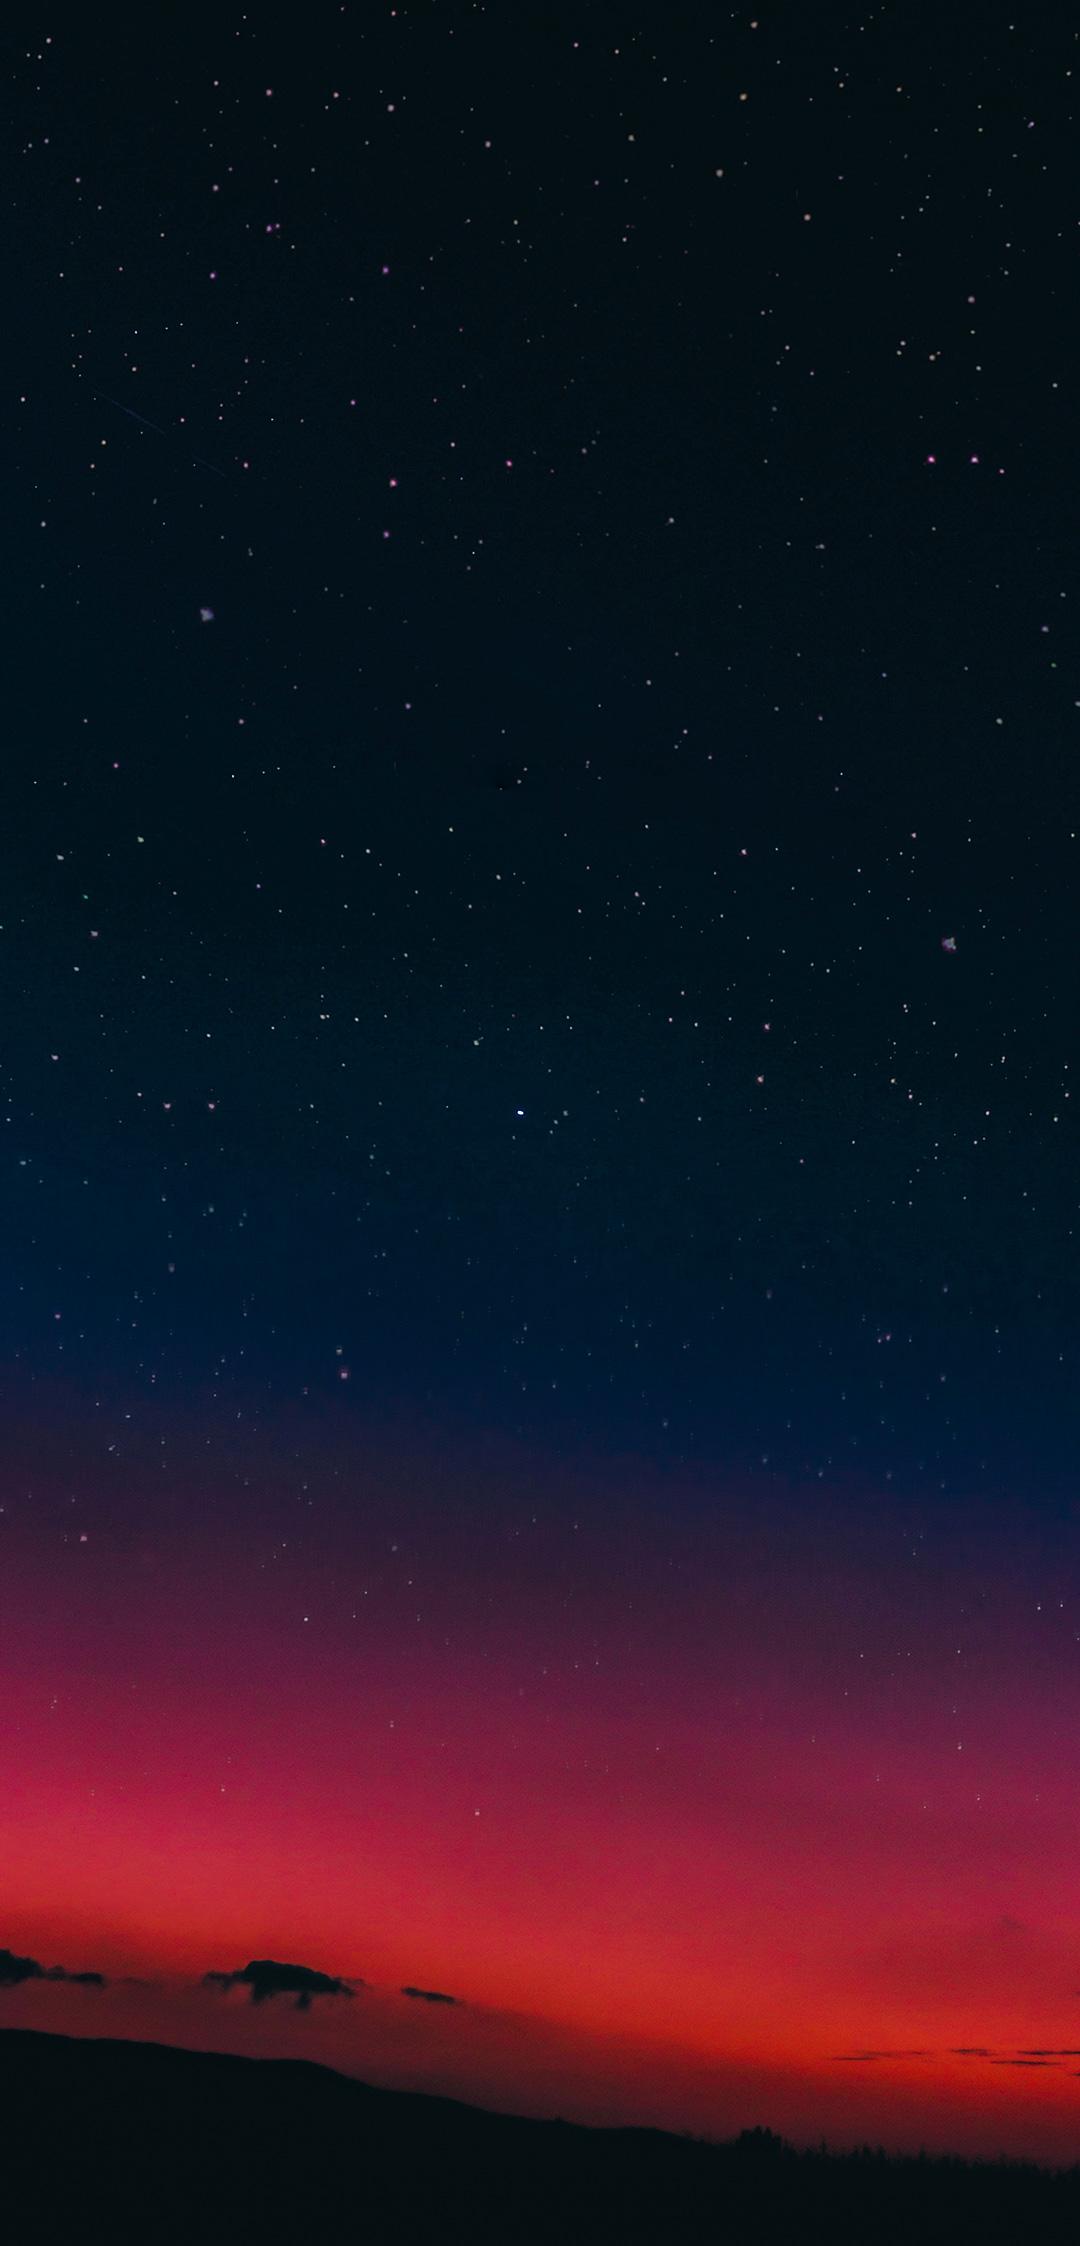  Xiaomi  Wallpapers  Top Free Xiaomi  Backgrounds 